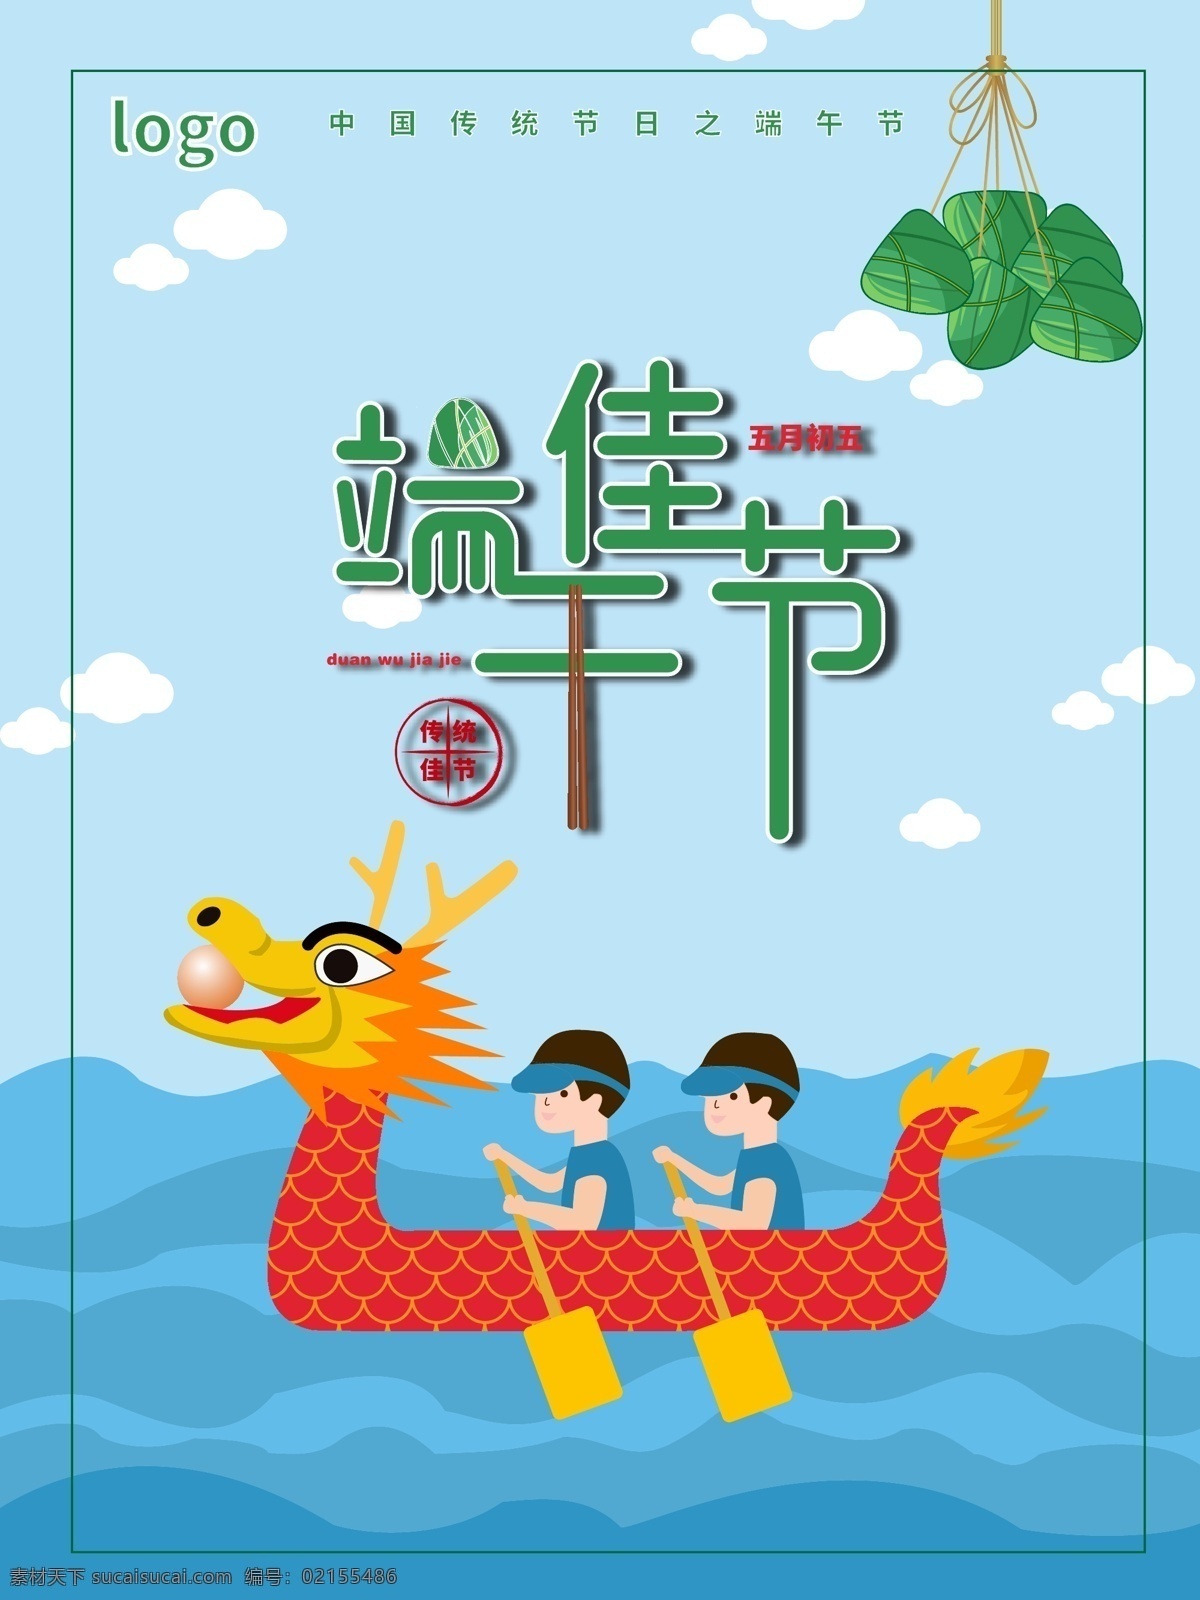 端午 佳节 节日 海报 原创 端午节 粽子 吃粽子 五月初五 传统佳节 扫龙舟